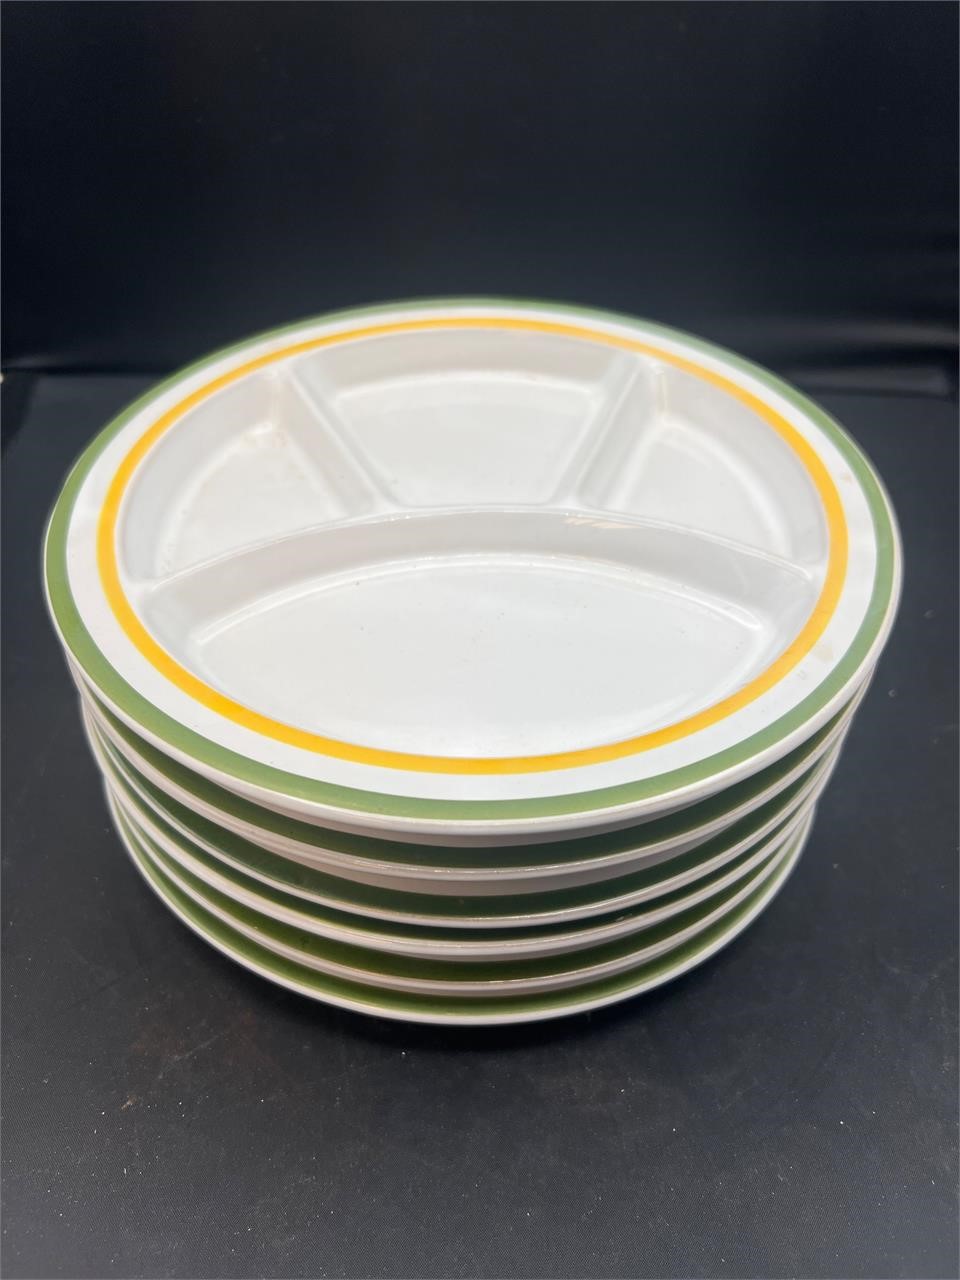 Vintage divided appetizer fondue plates